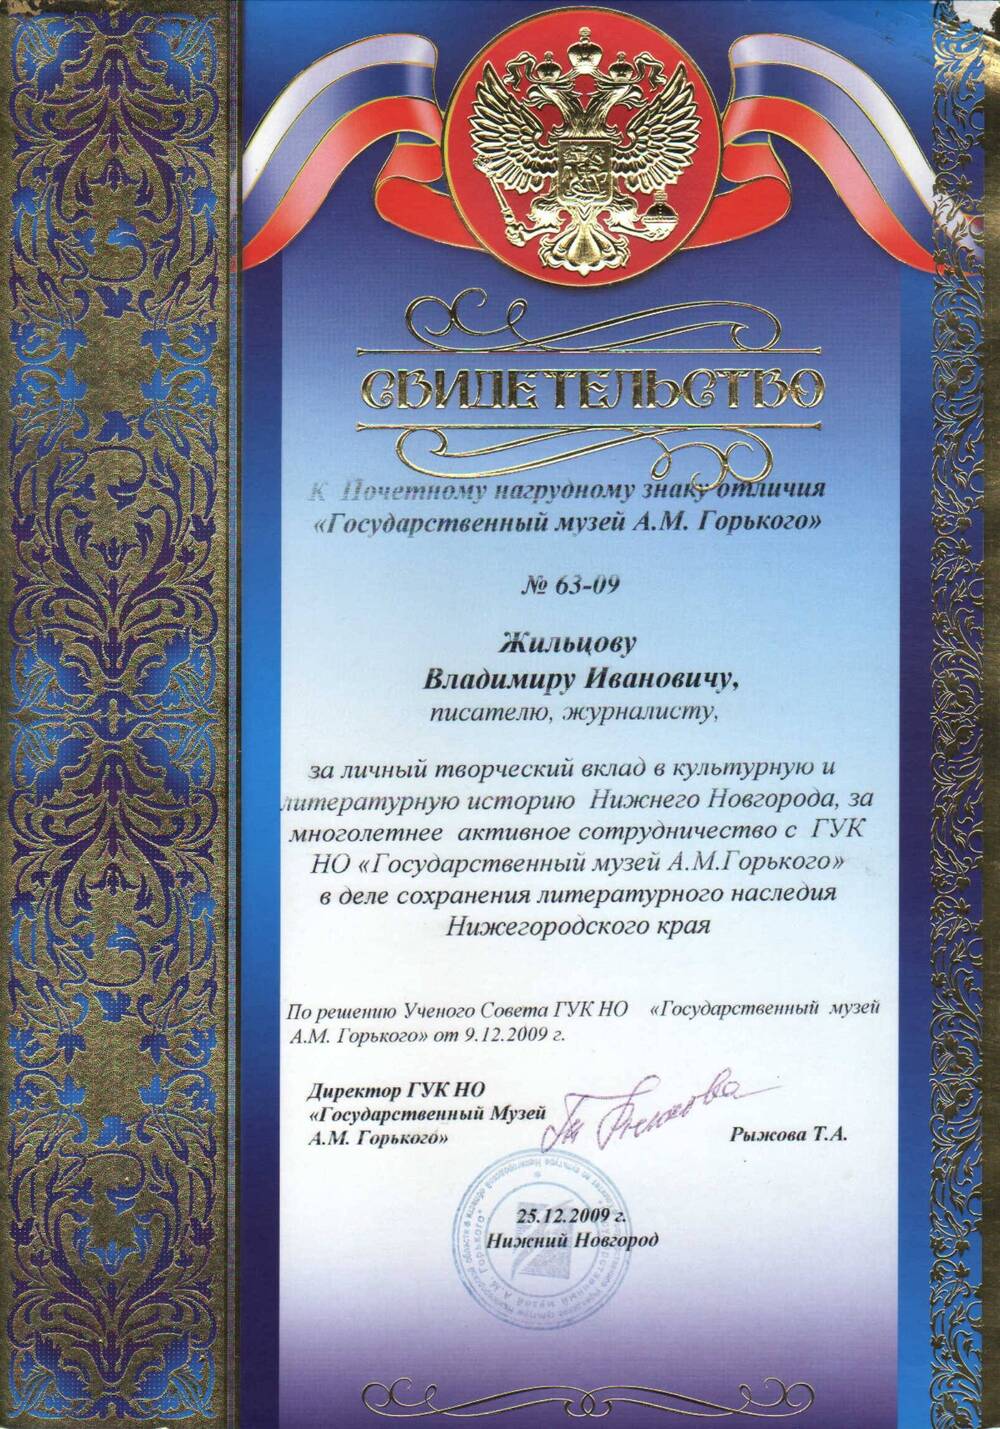 Свидетельство к почетному знаку отличия Жильцова В.И. 2009 г.